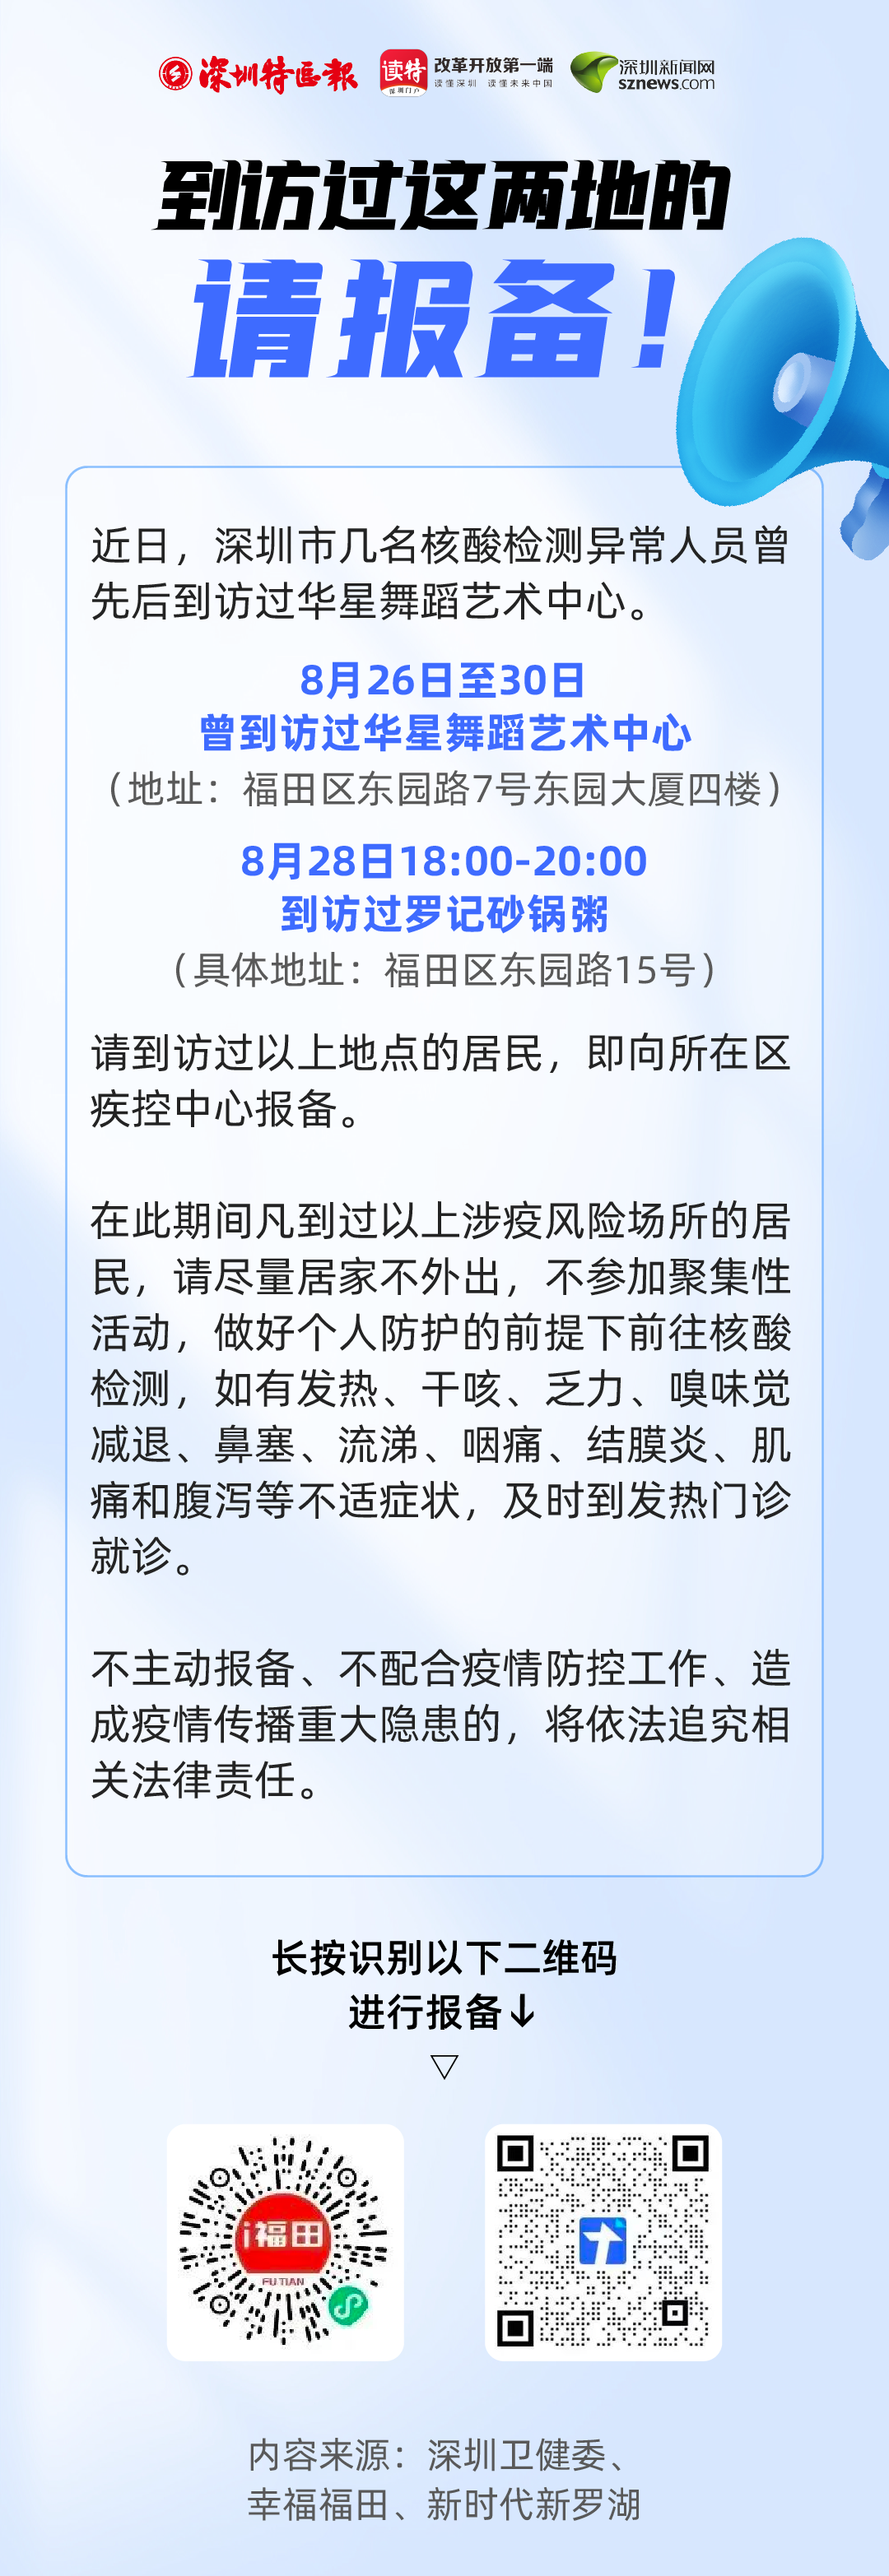 紧急提醒！近期到访过深圳这些地区的人员请立即主动报备